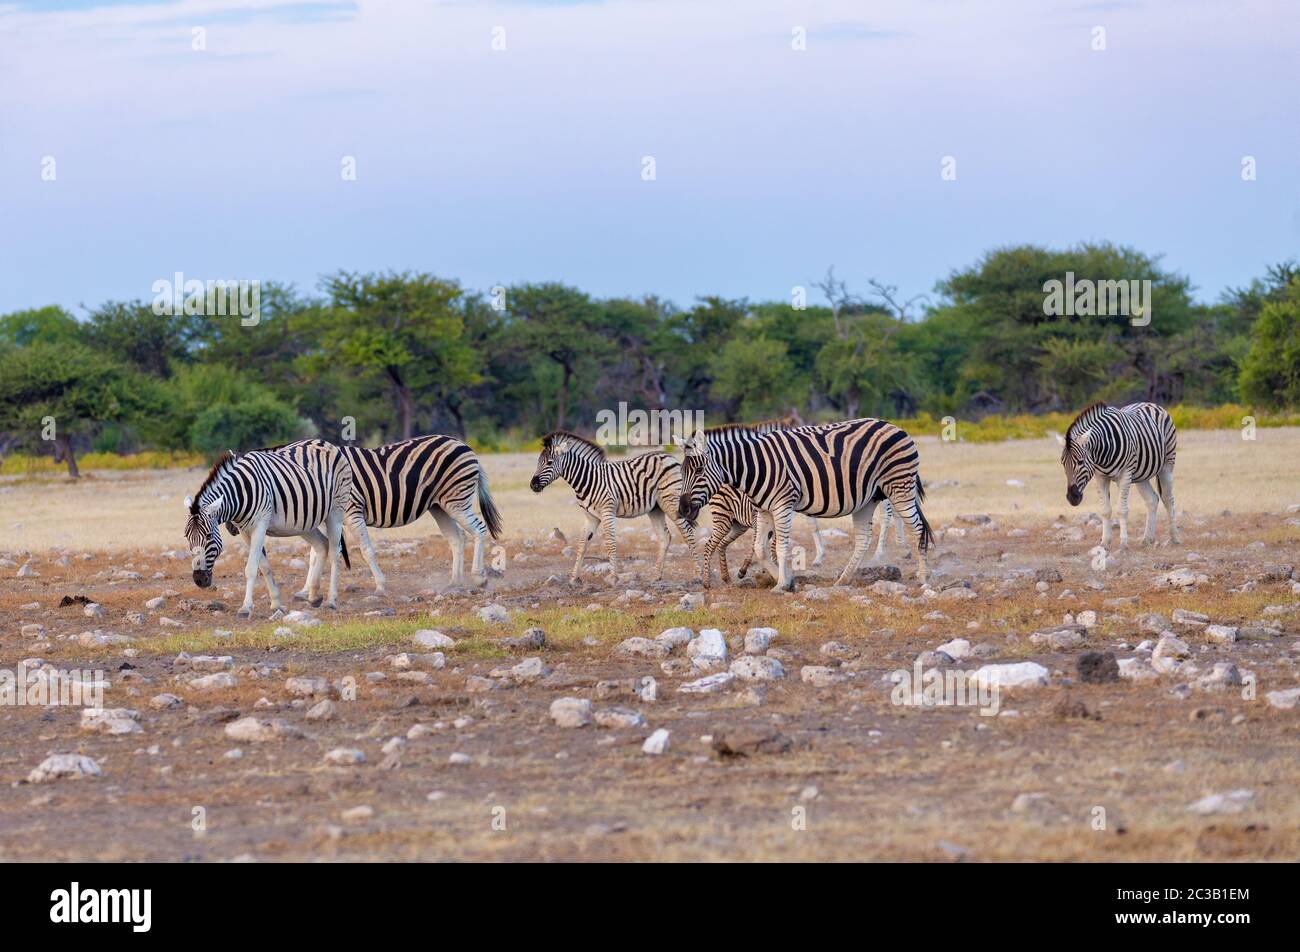 mandria di zebra in boccola africana, a piedi a watehole. Riserva di Etosha, Namibia, Africa safari fauna selvatica. Animale selvatico nell'habitat naturale Foto Stock